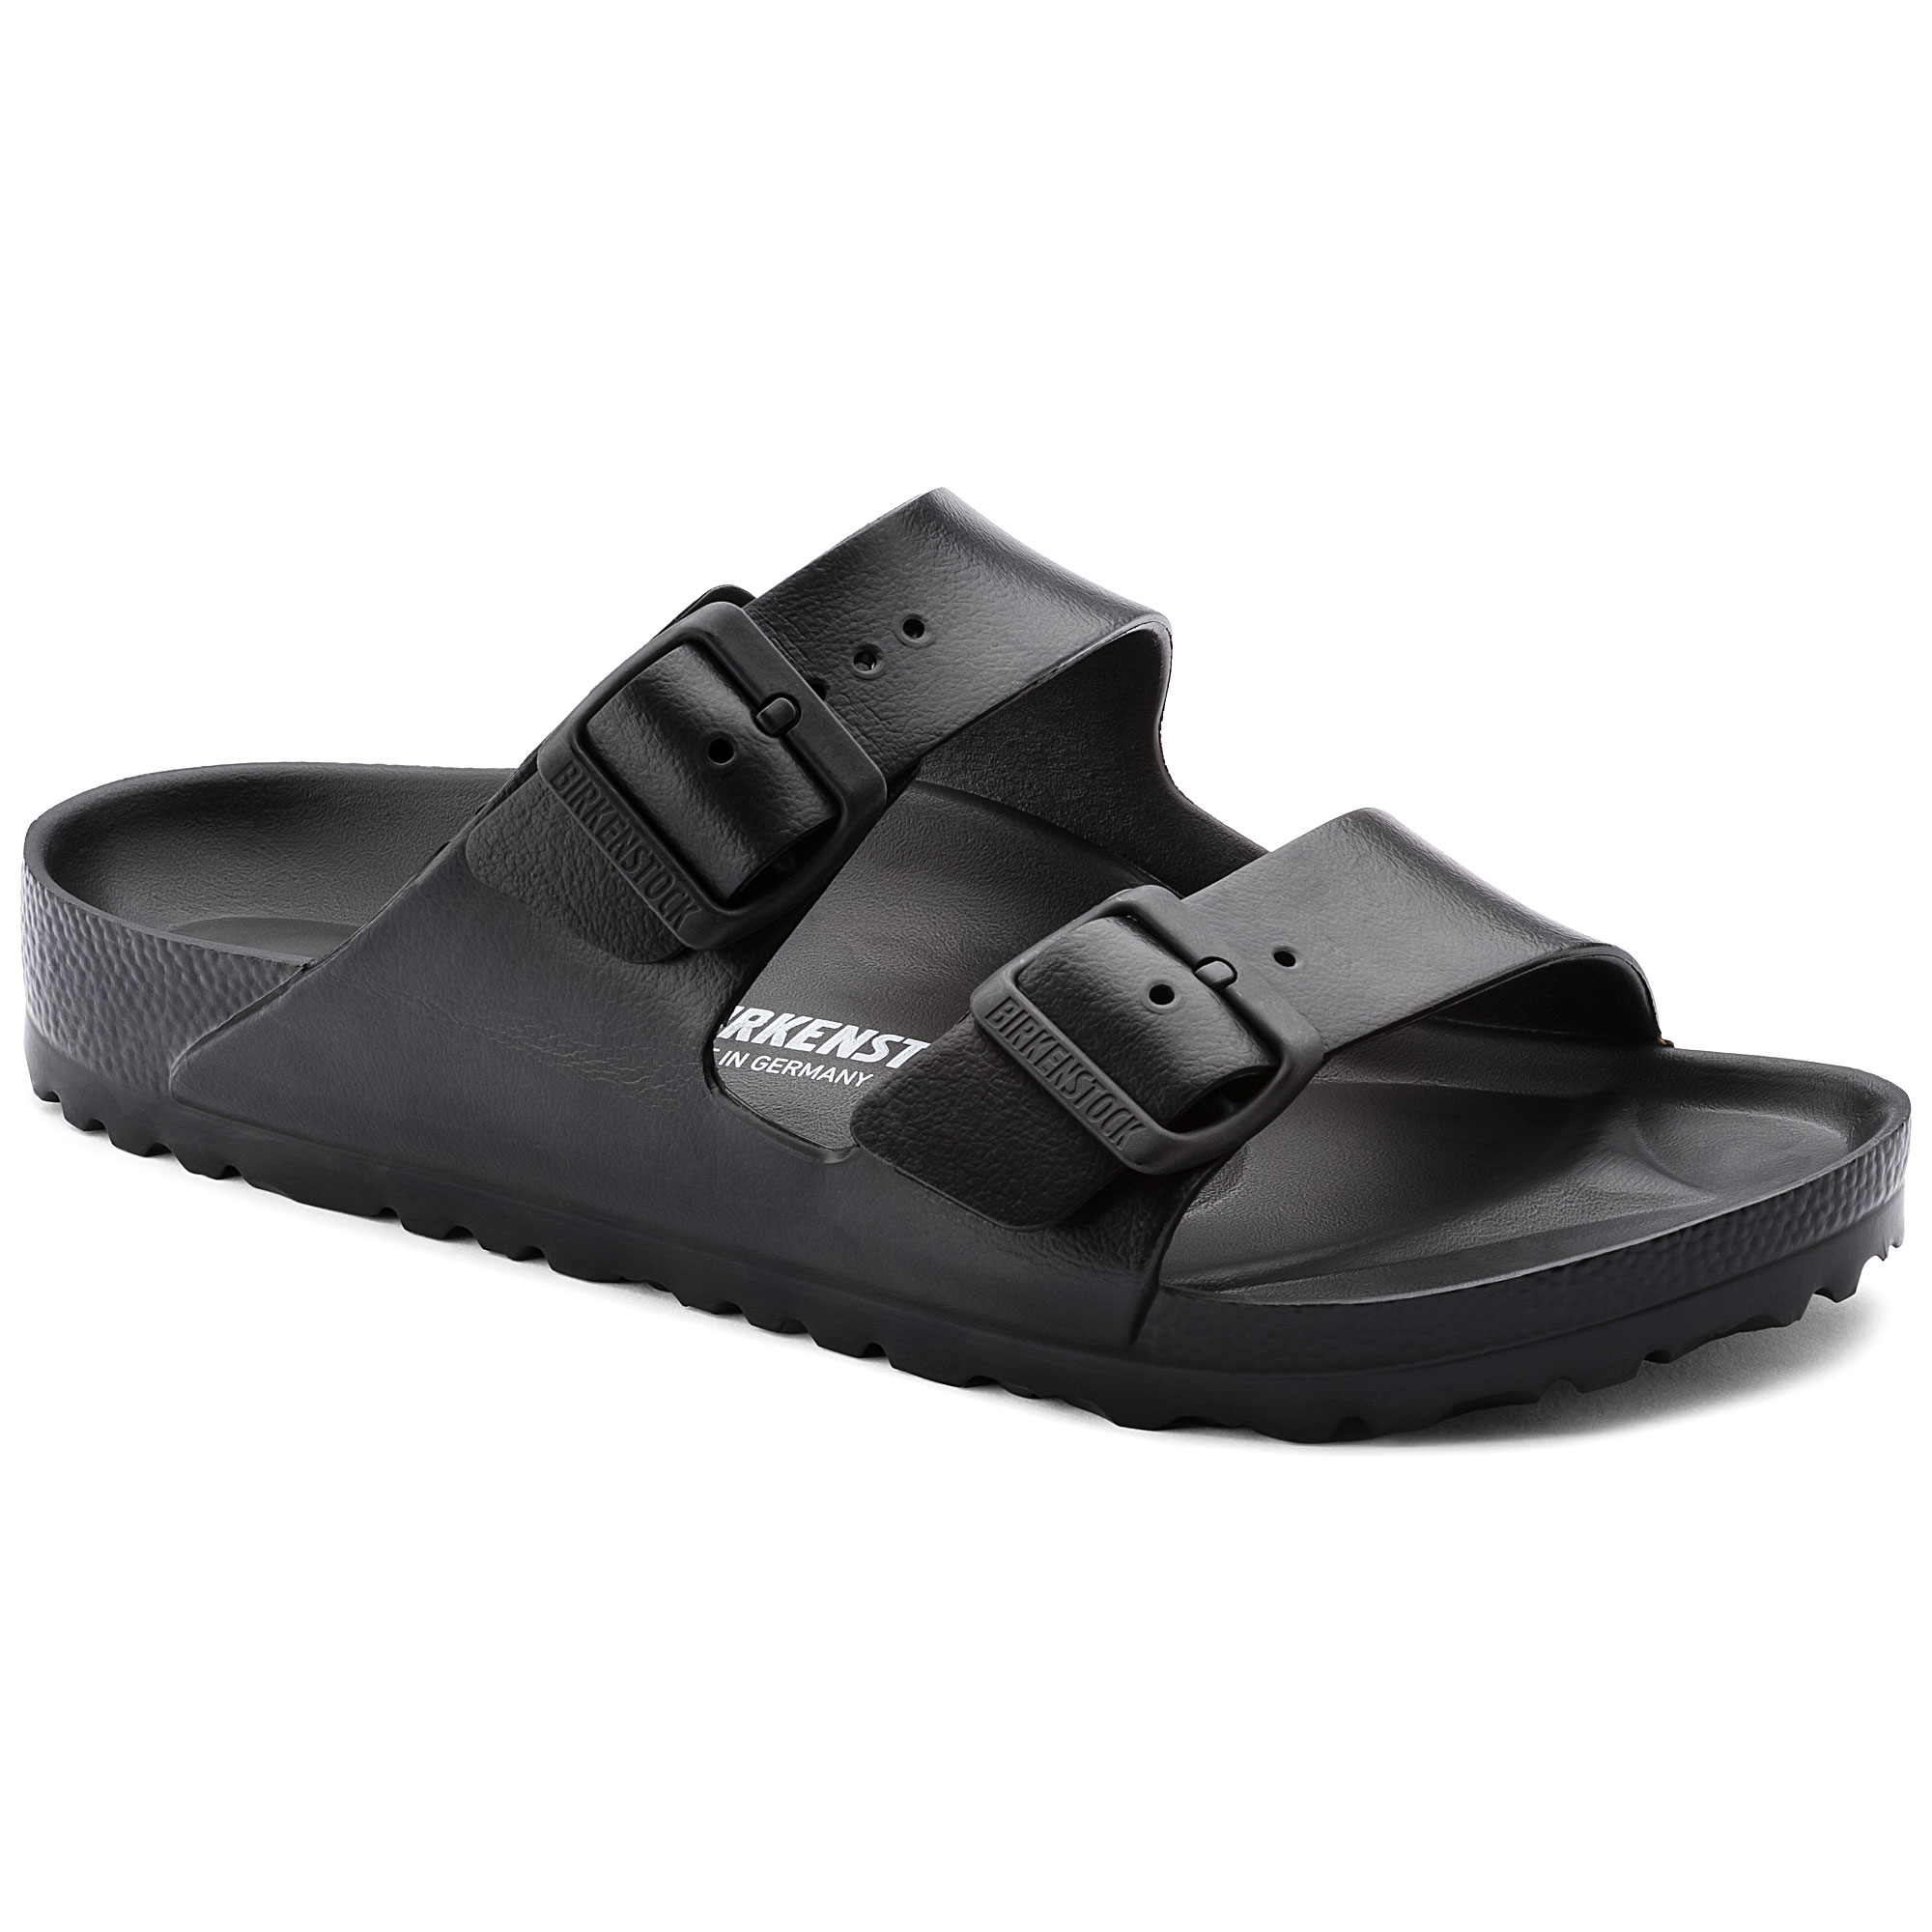 birkenstock black rubber sandals